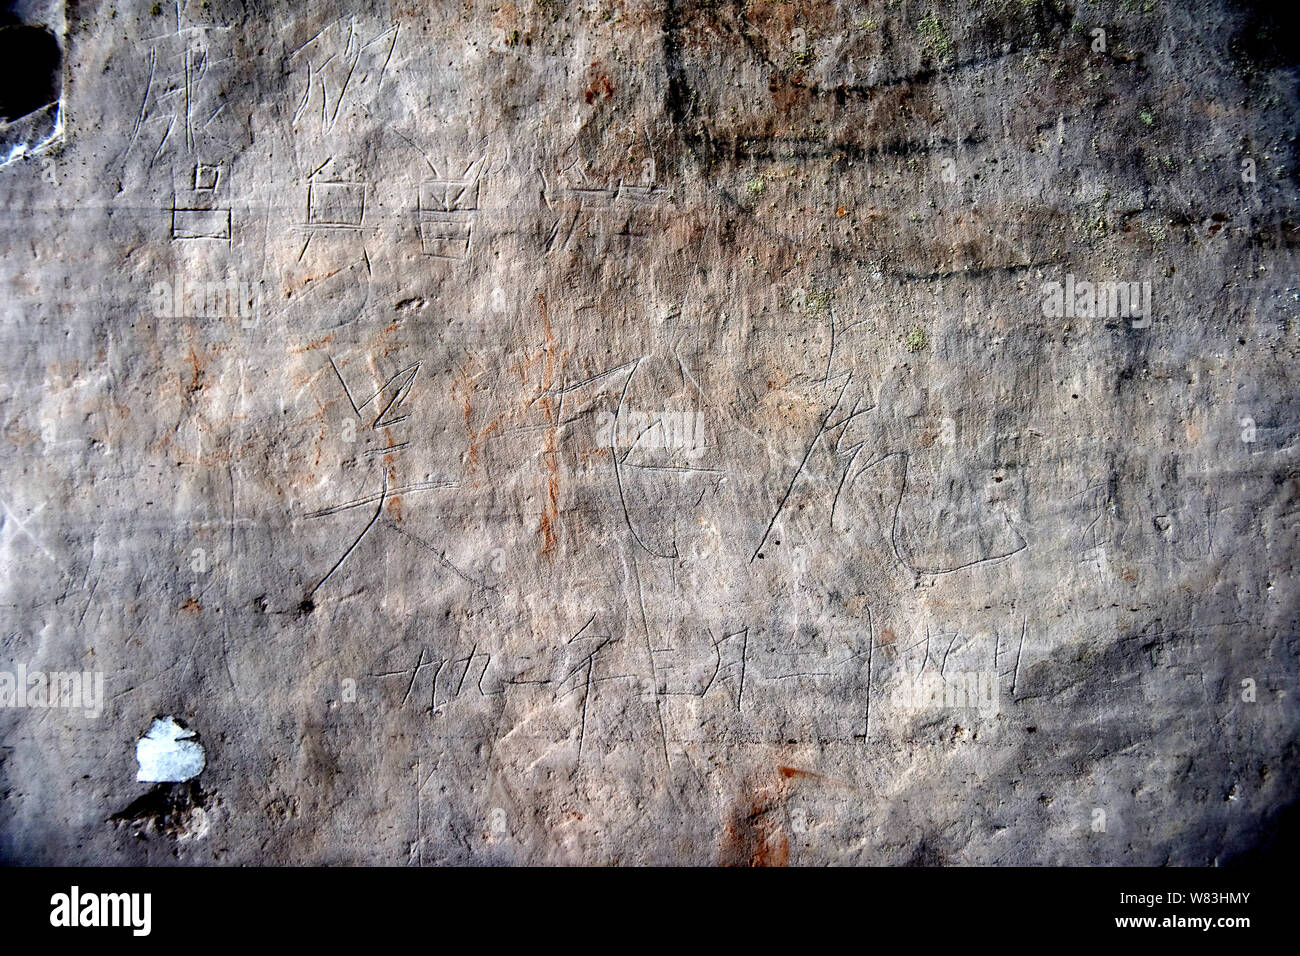 Avis de sutras bouddhiques cachés dans une grotte en pierre d'une montagne dans Wofo ville près d'Anyue county, Ziyang city, dans le sud-ouest de la province chinoise du Sichuan, le 14 décembre Banque D'Images